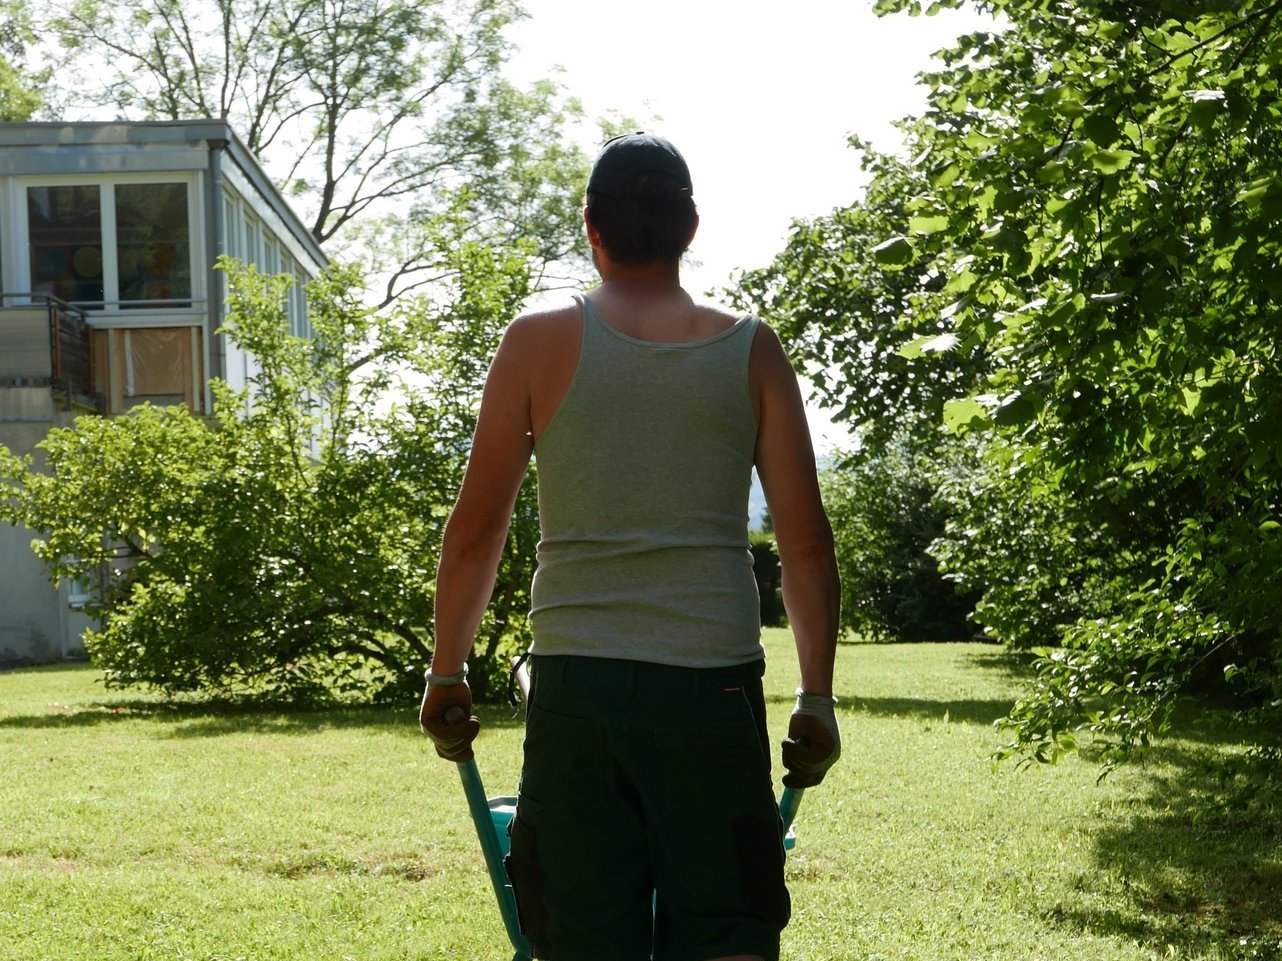 Gartenarbeit am Gebäude: ein Mann schiebt eine Schubkarre